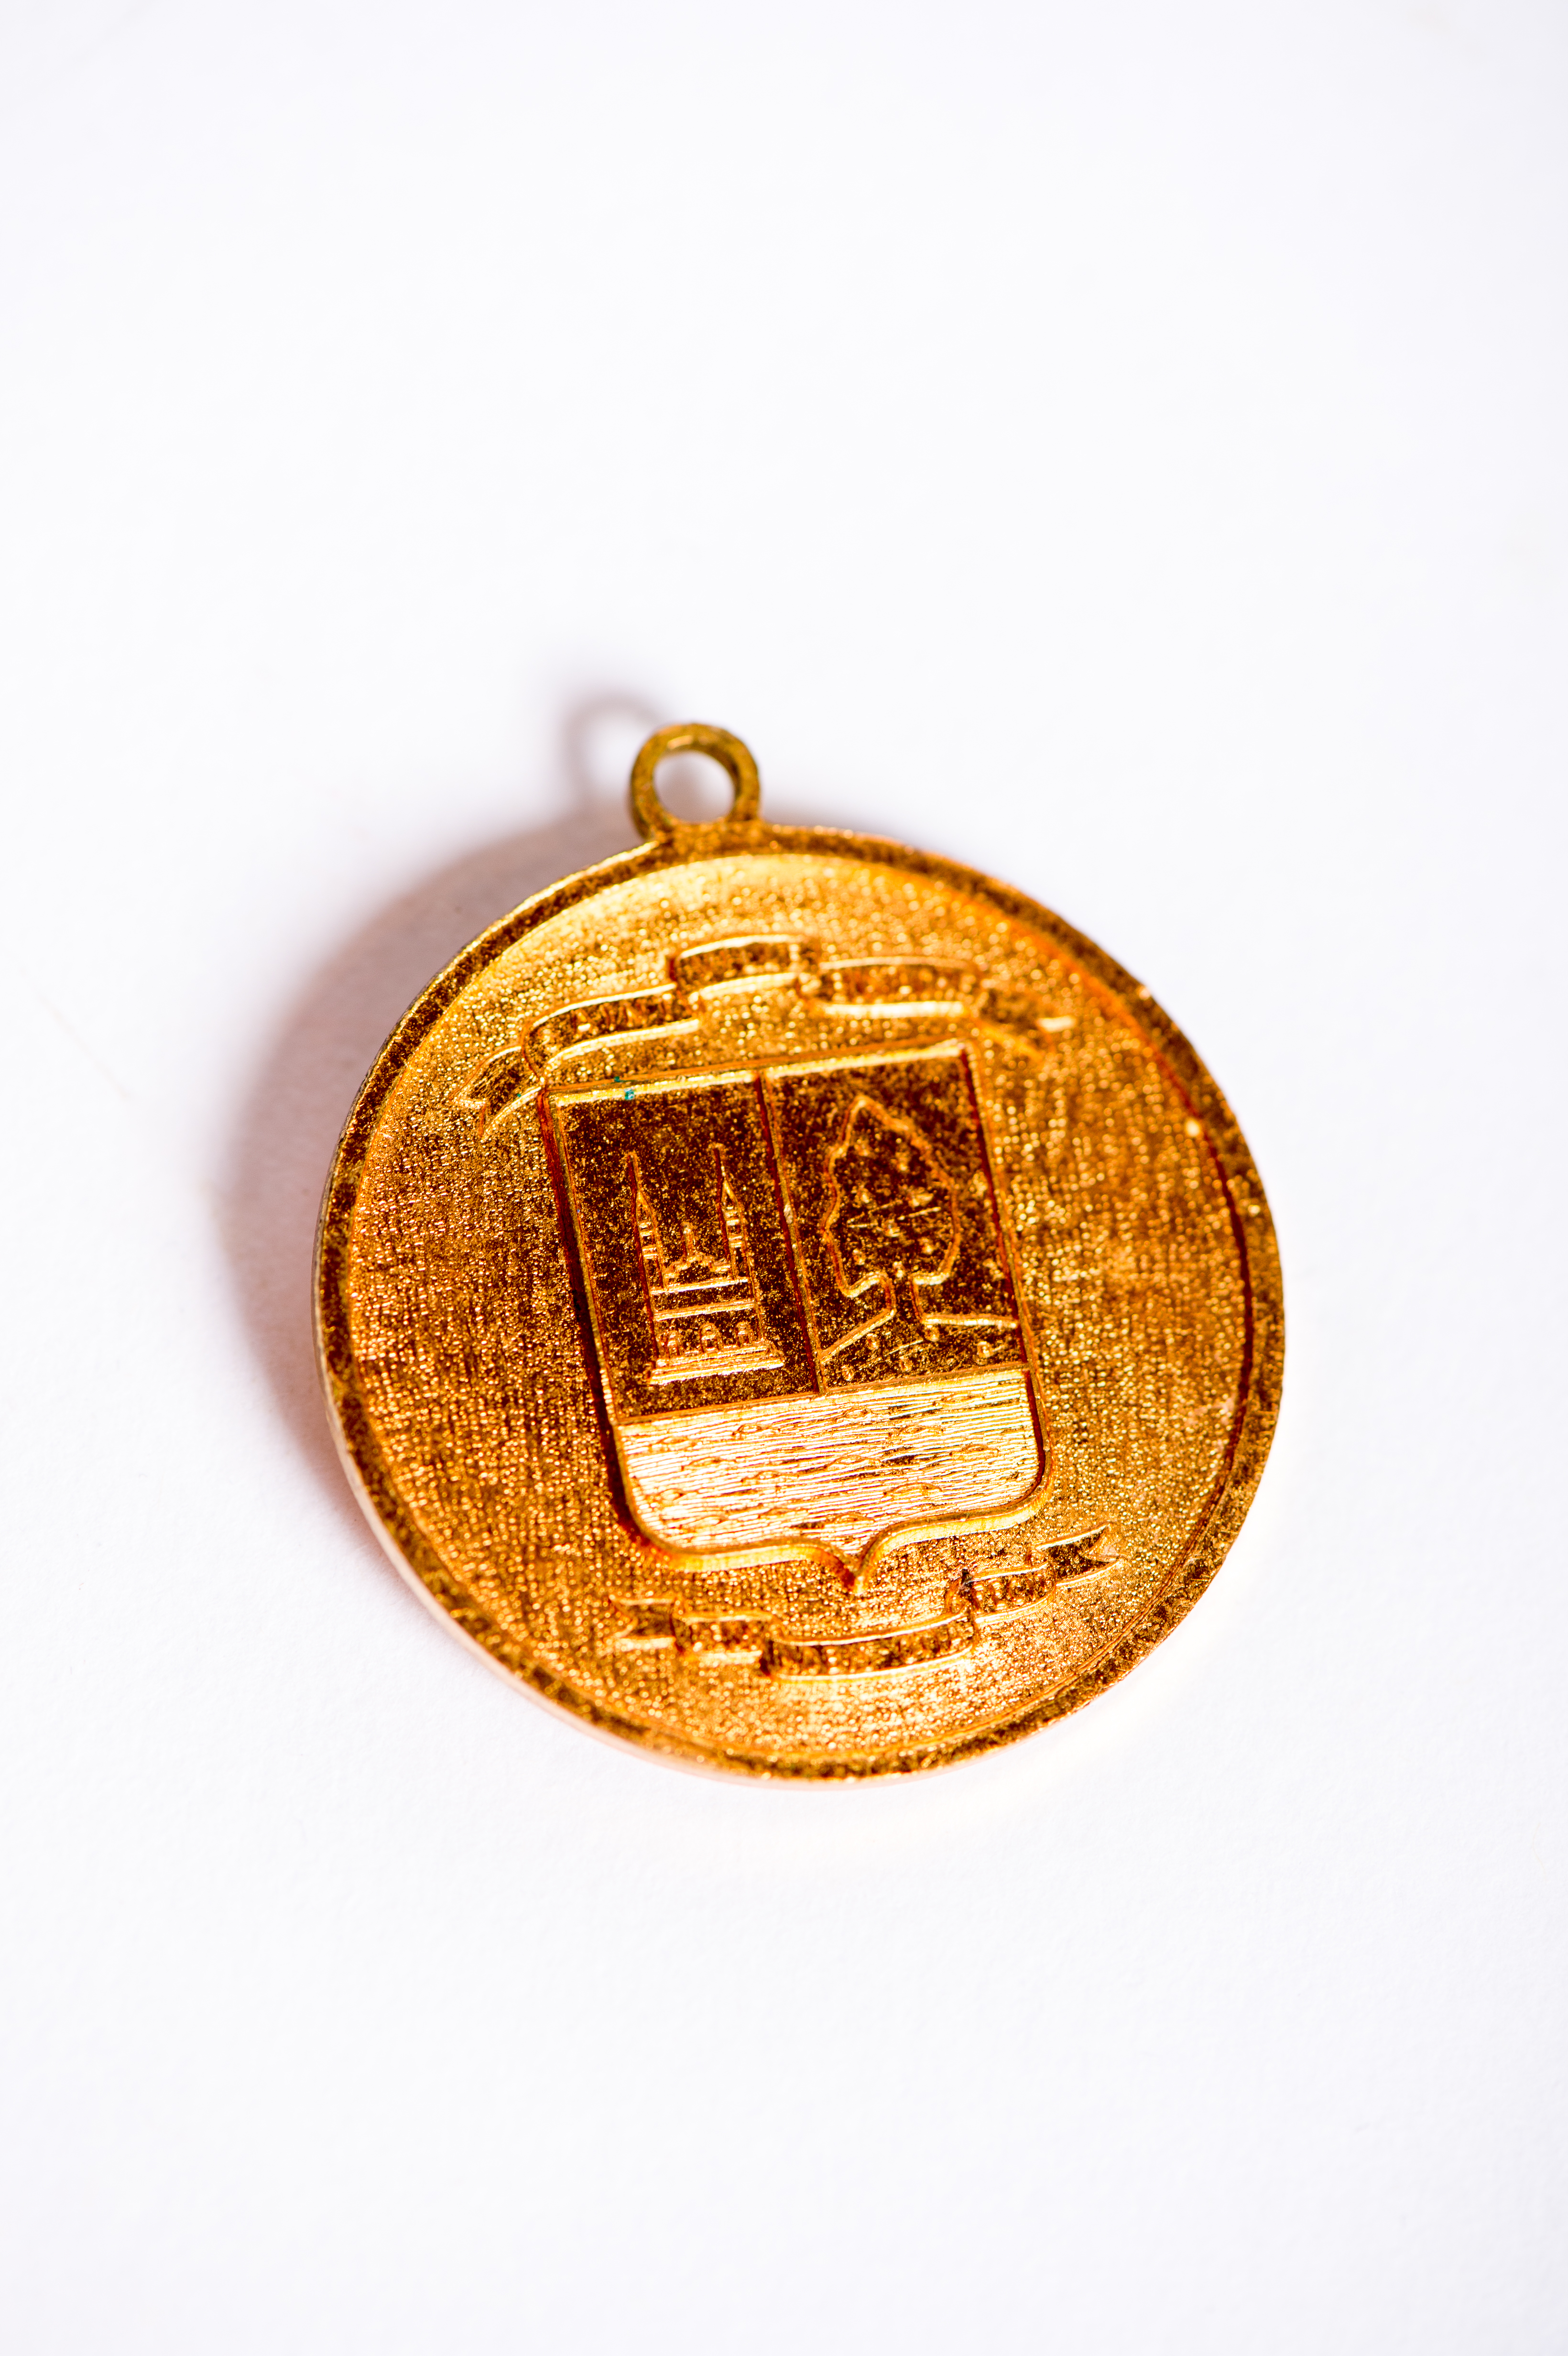 Photographie d’un médaillon honorifique de couleur dorée sur fond blanc illustrant les armoiries de la Ville de Saint-Eustache, soit une église, un chêne et une rivière.